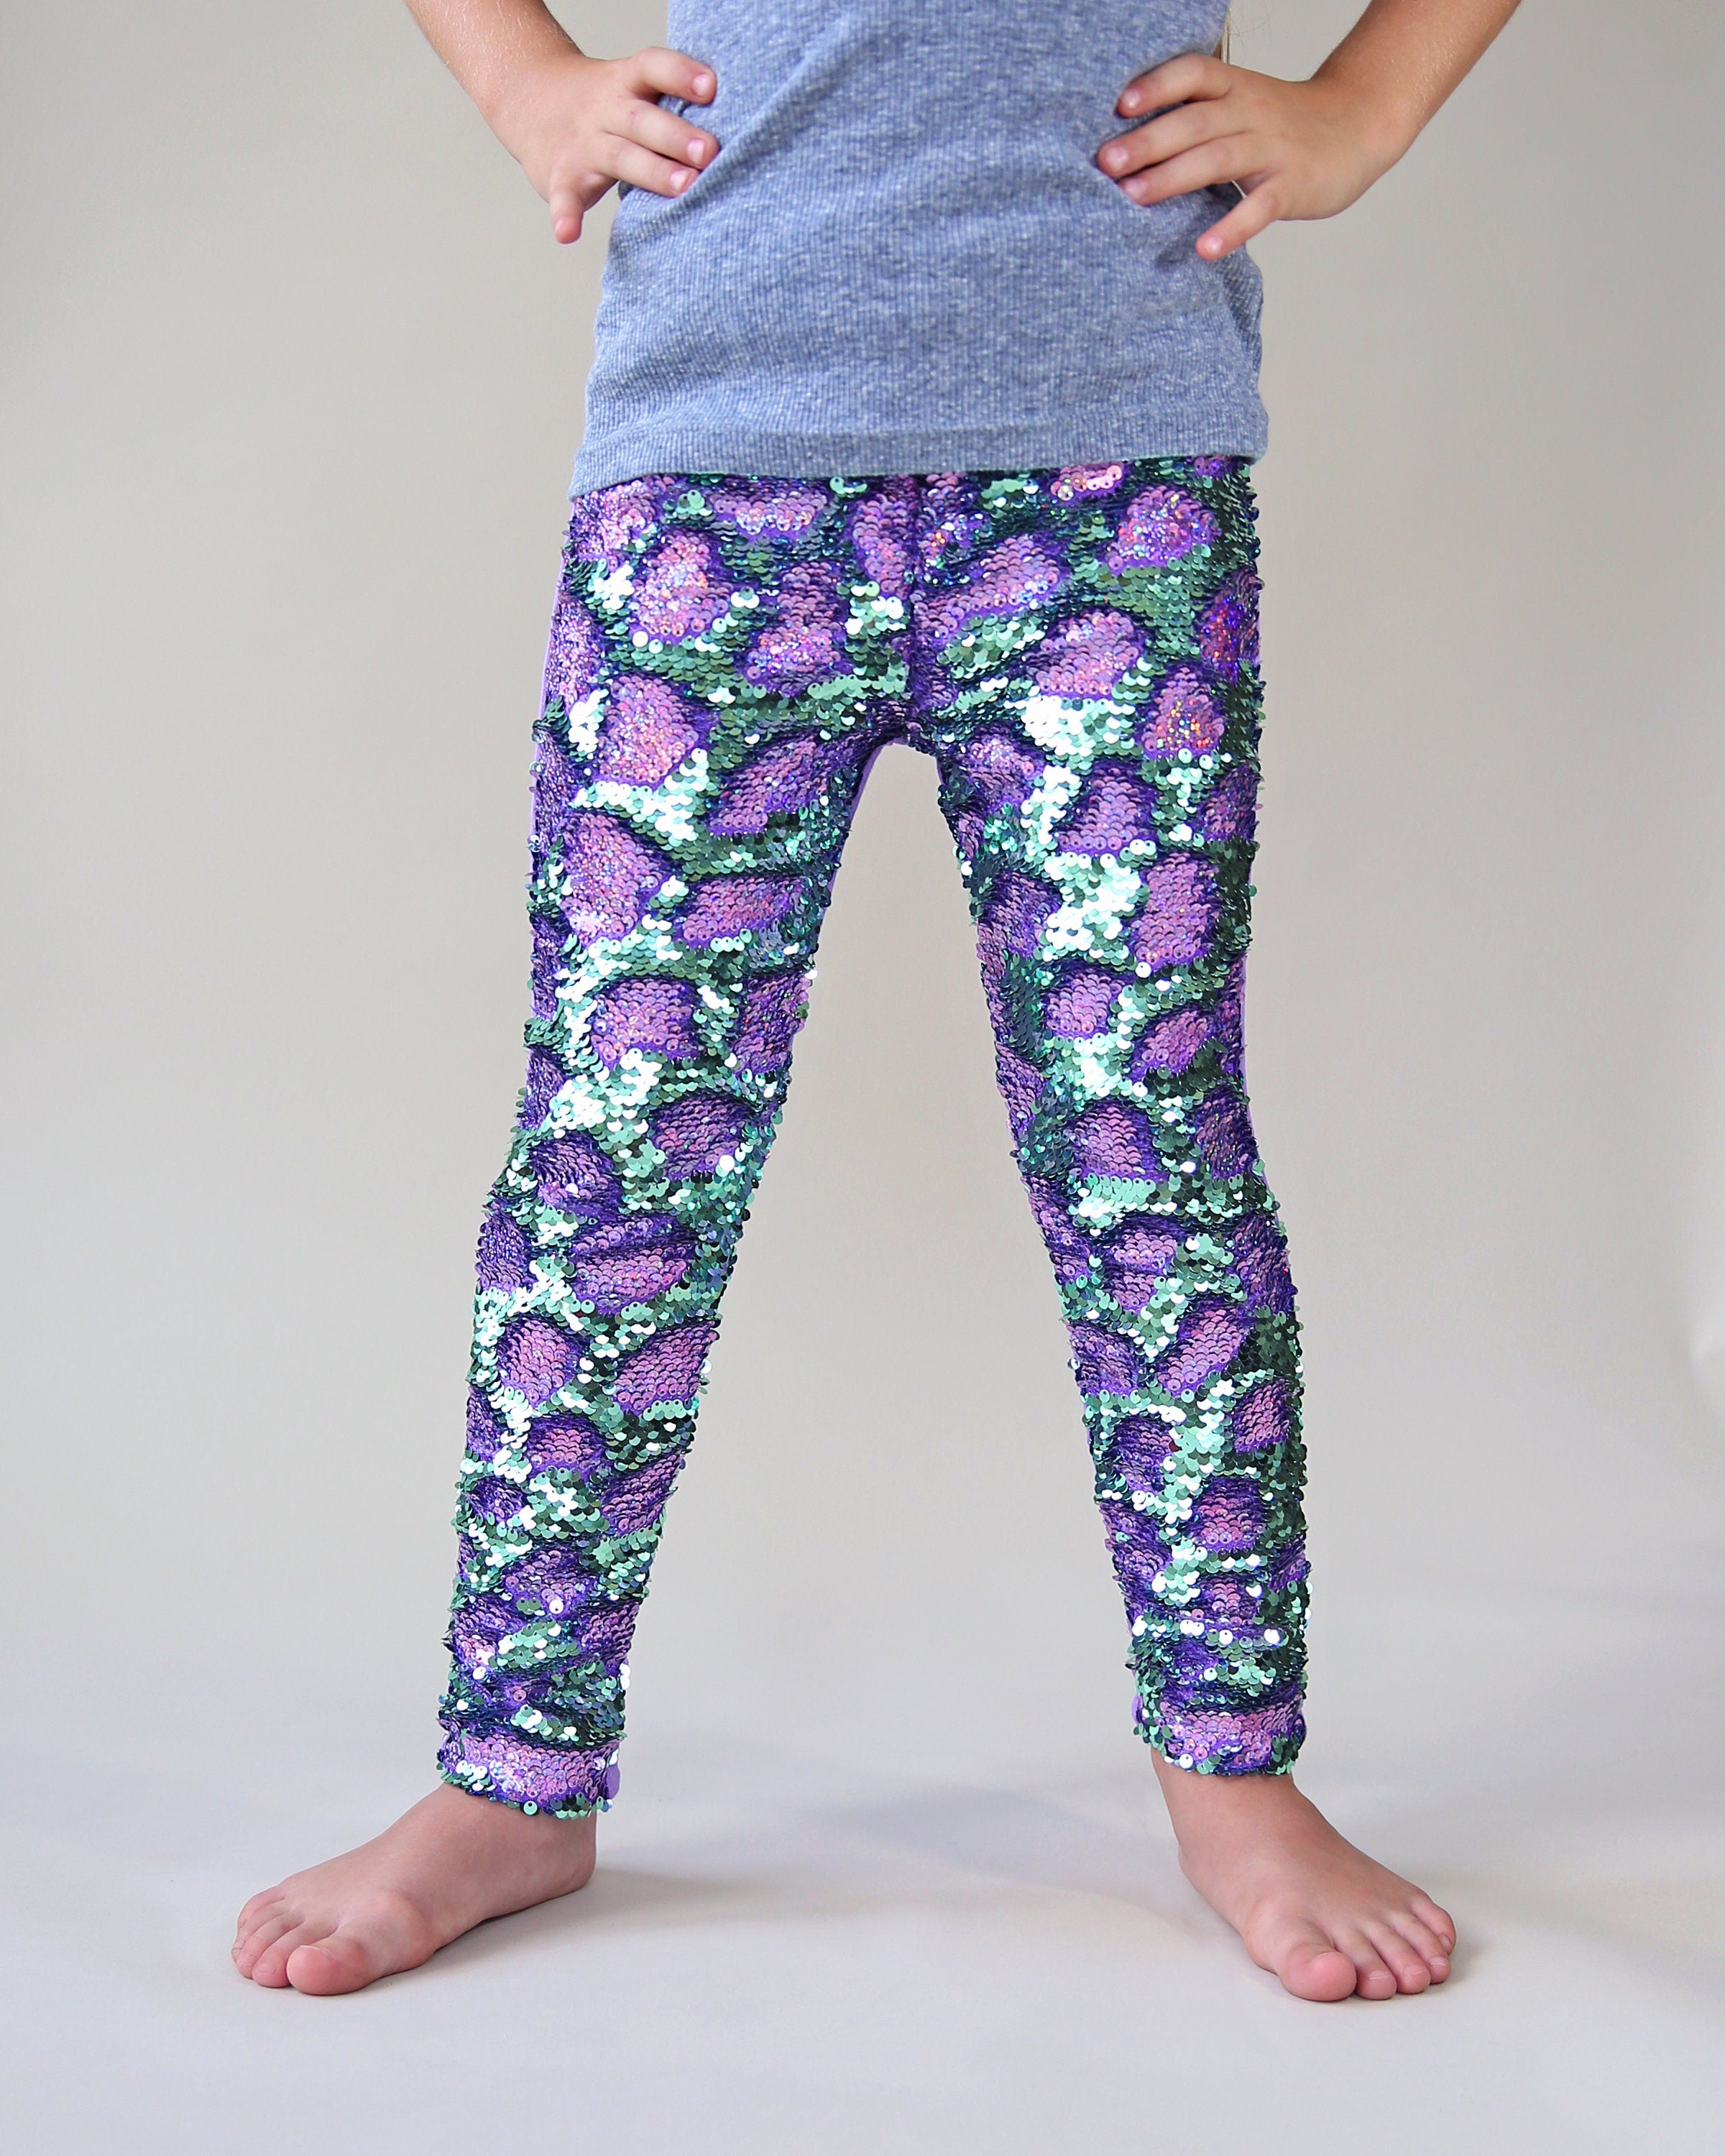 Purple Sparkle Leggings/Tights